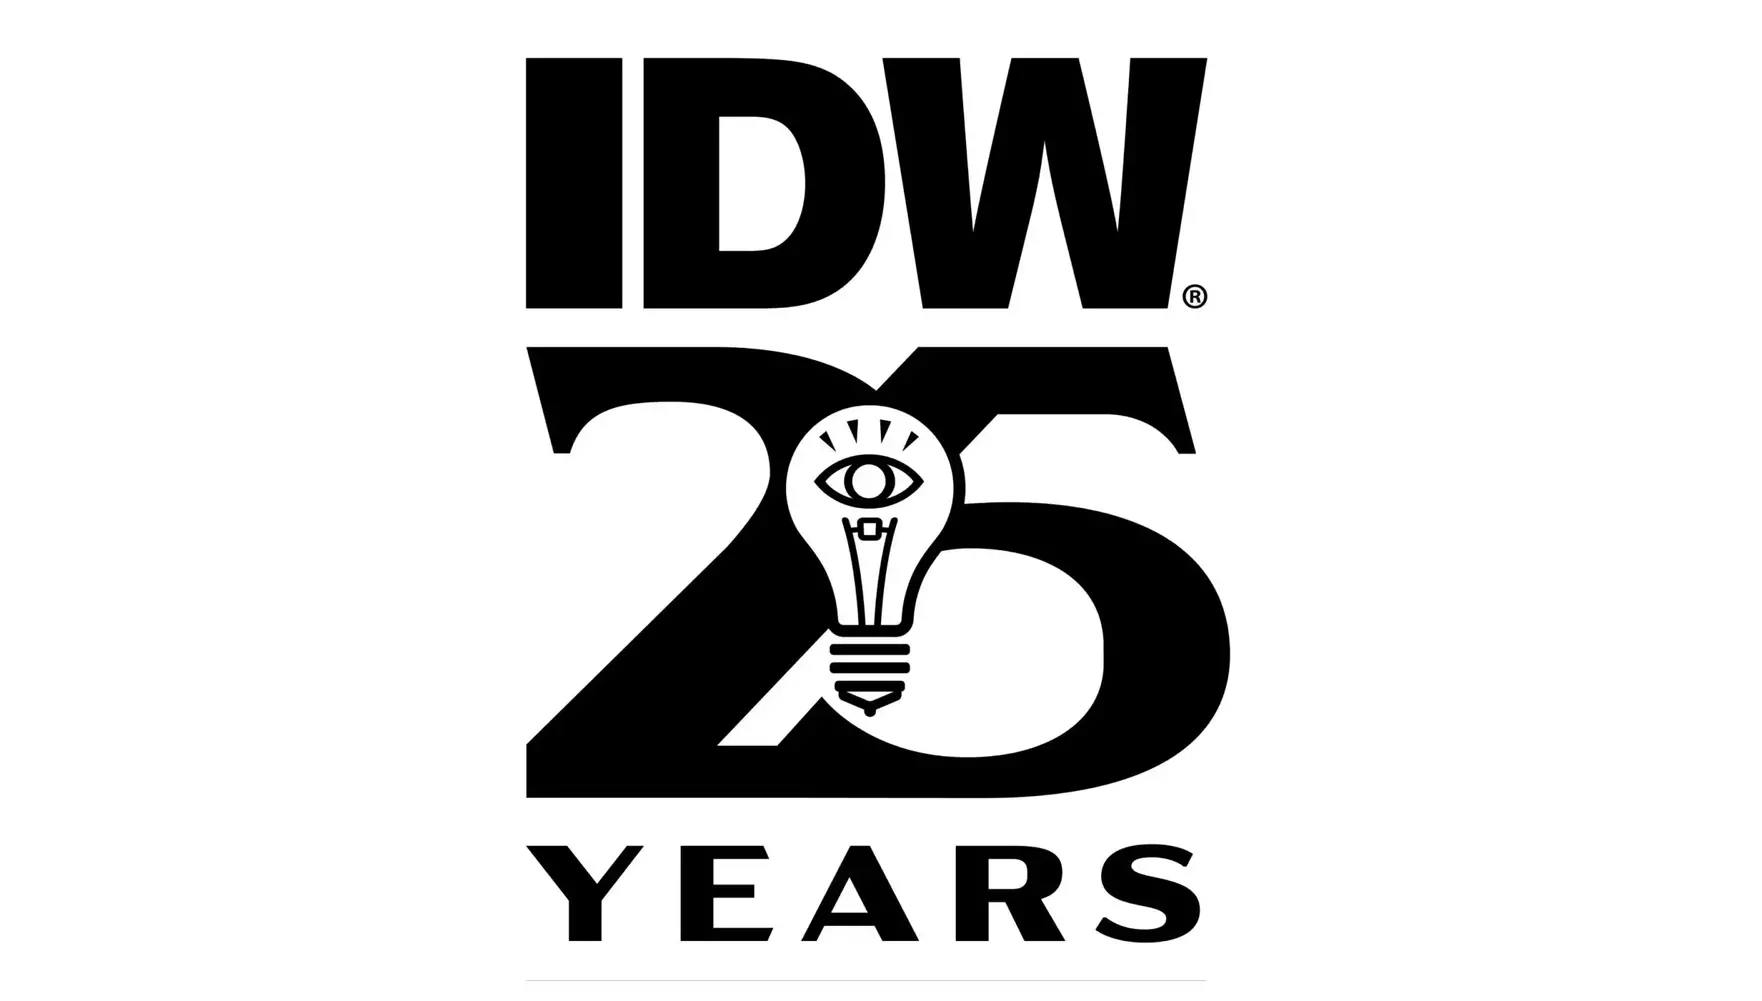 IDW 25 Years Anniversary